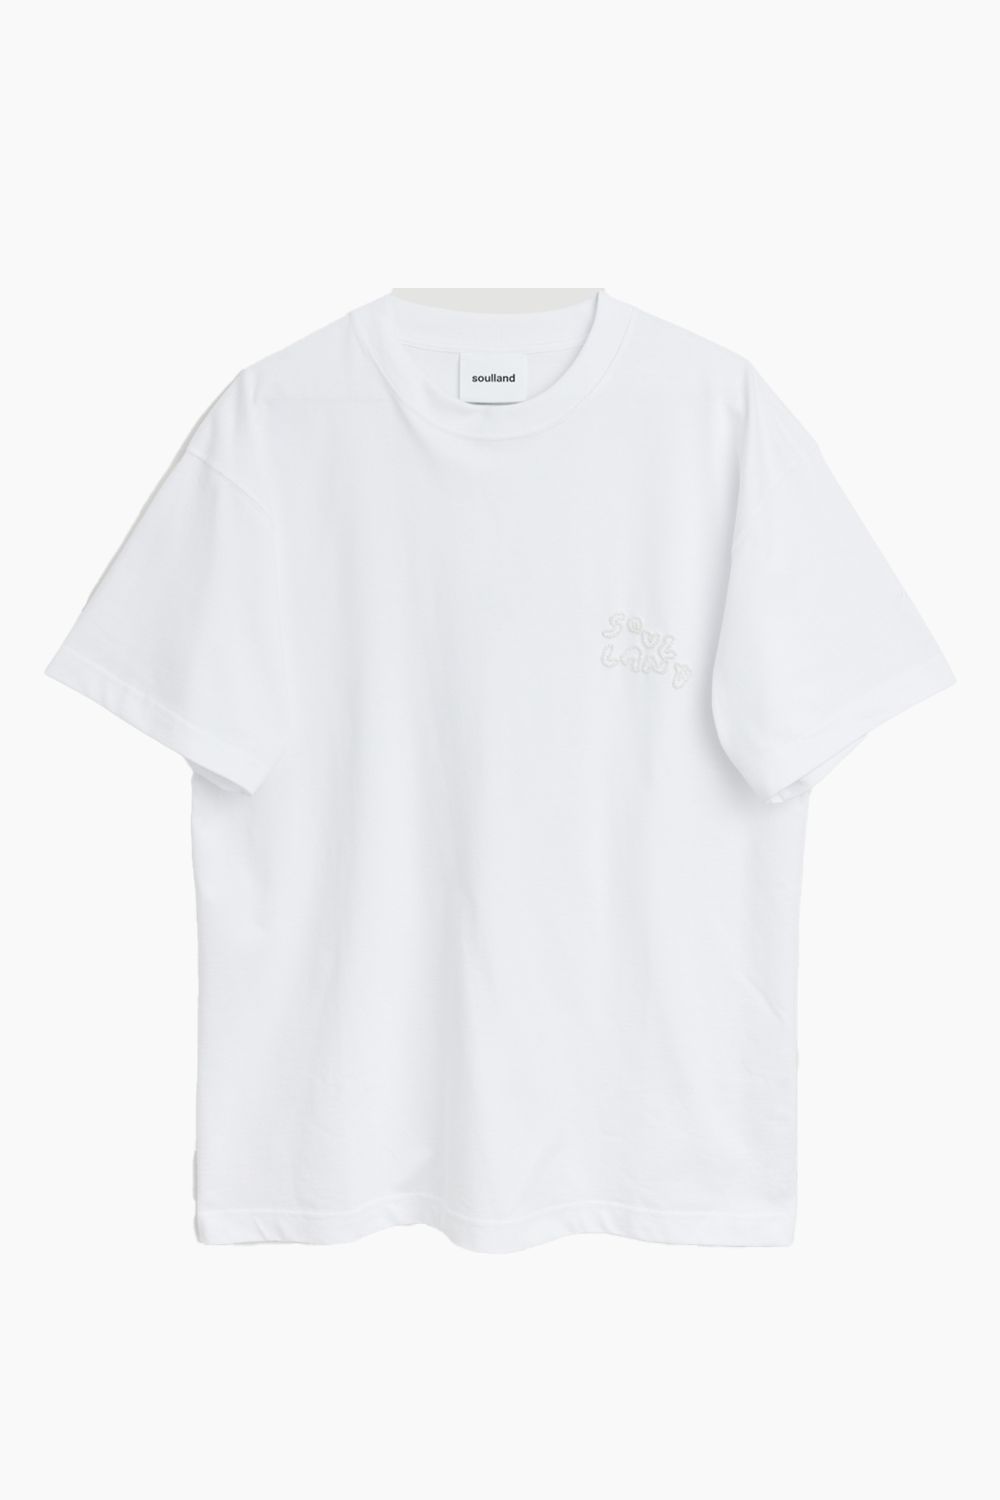 Se Kai T-shirt Beaded Logo - White - Soulland - Hvid M/L hos QNTS.dk